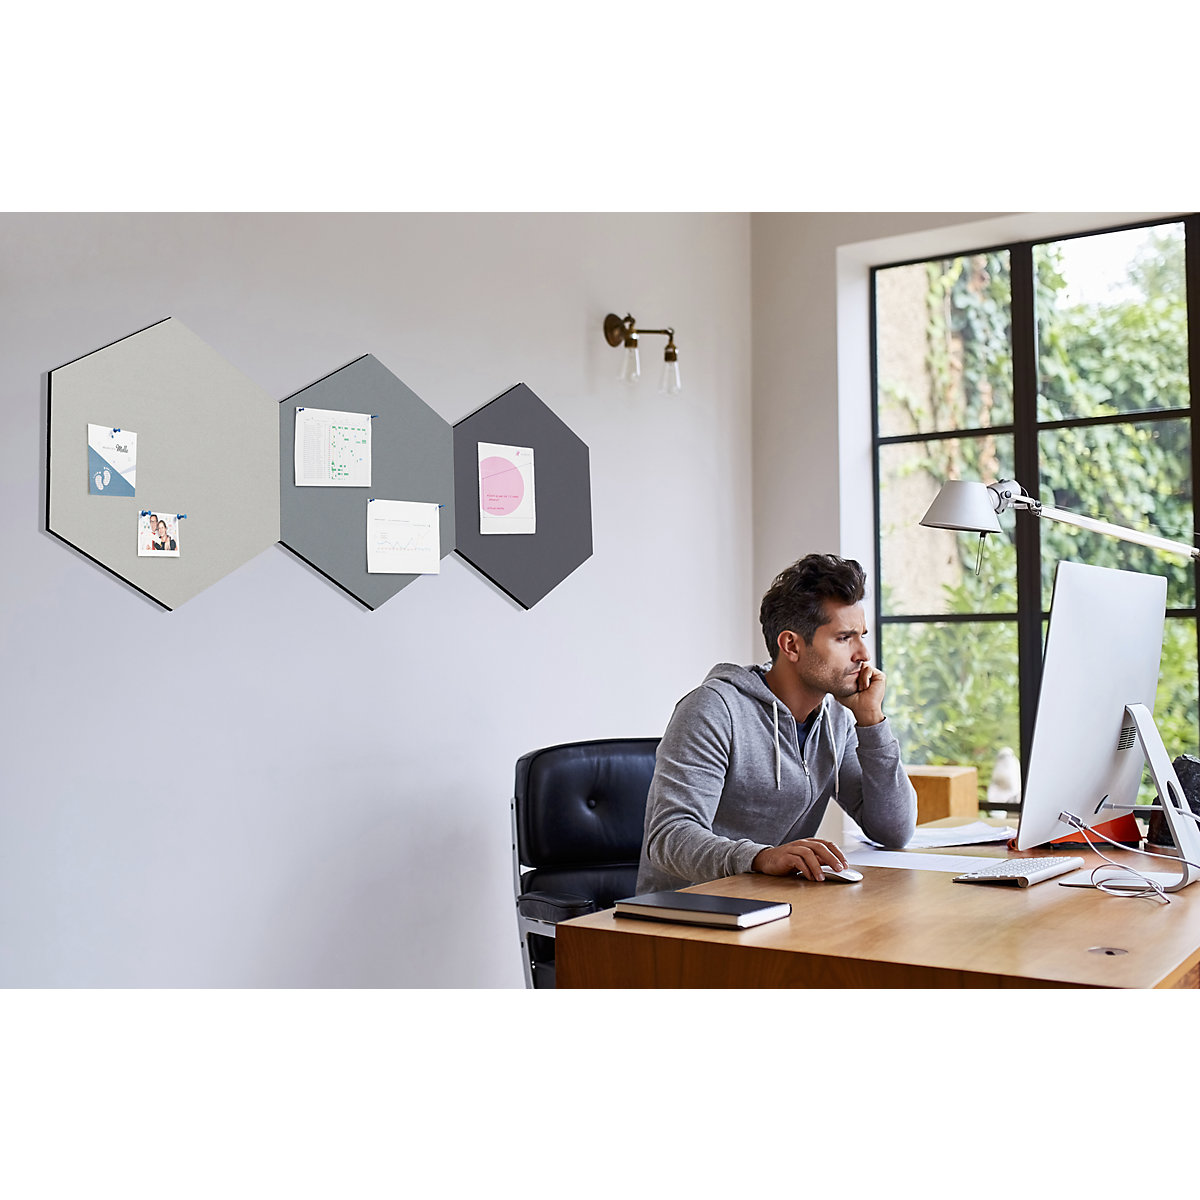 Hexagonal designer pin board – Chameleon (Product illustration 63)-62